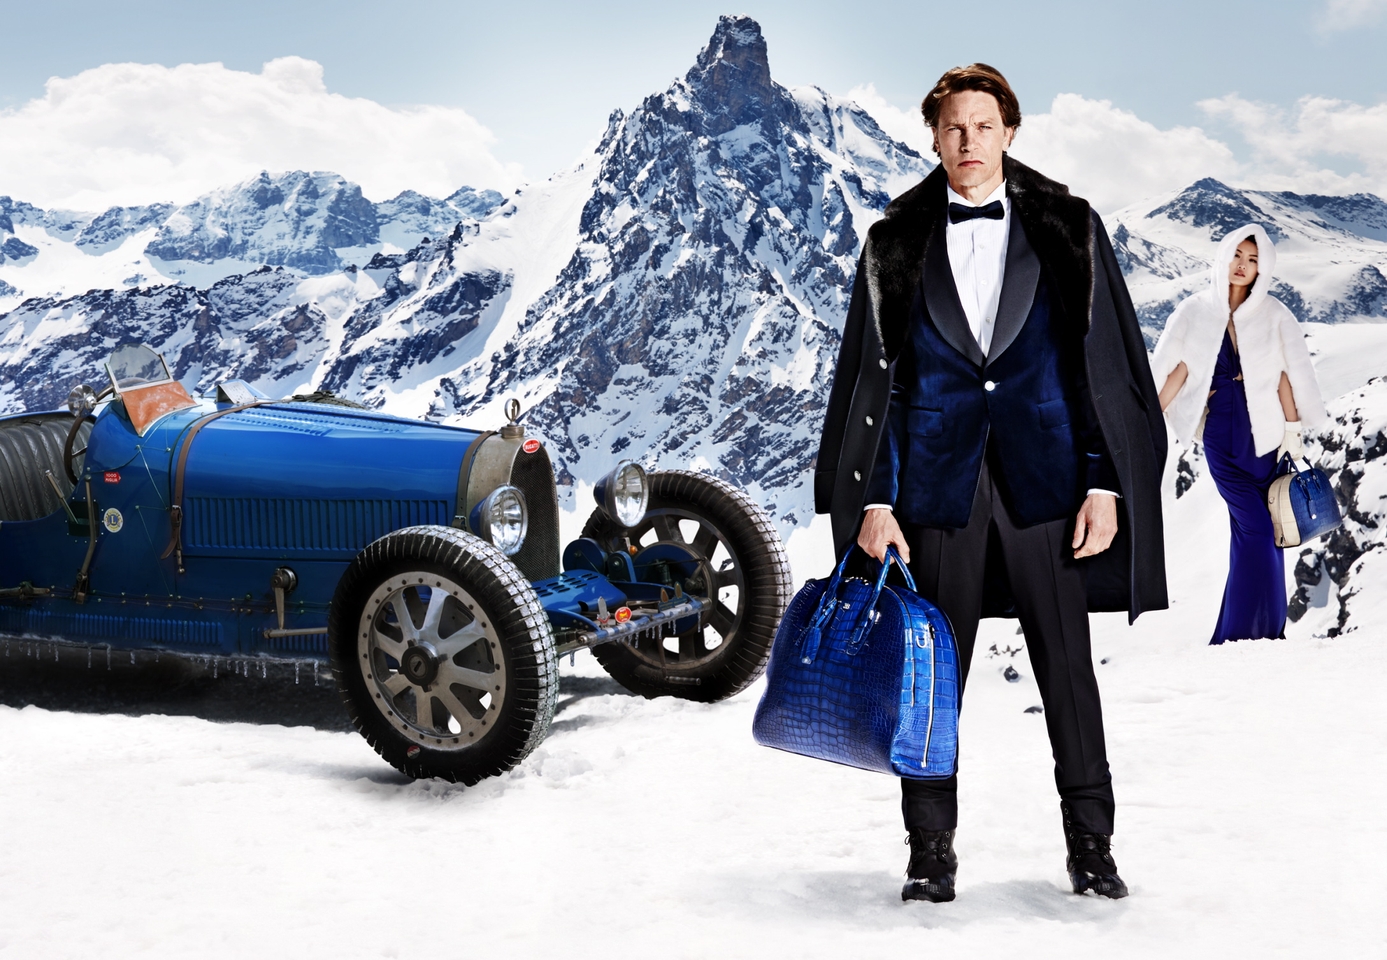 Bugatti presents the new campaign